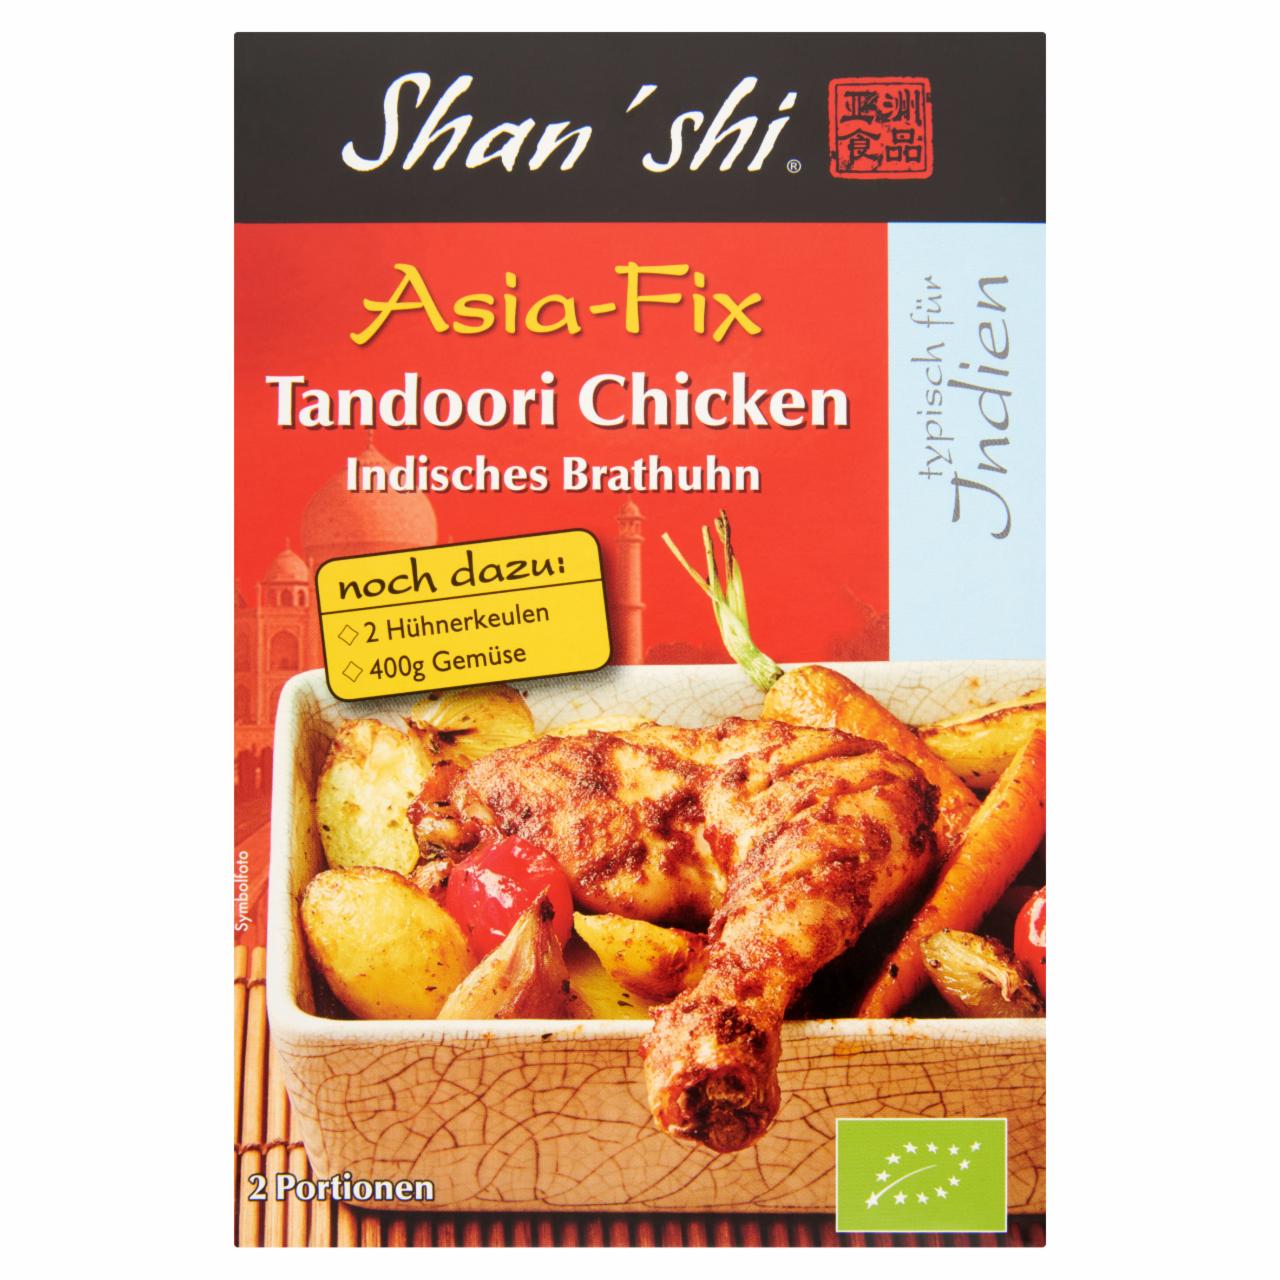 Képek - Shan'shi Asia-Fix Tandoori Chicken BIO fűszerkeverék indiai sült csirkéhez